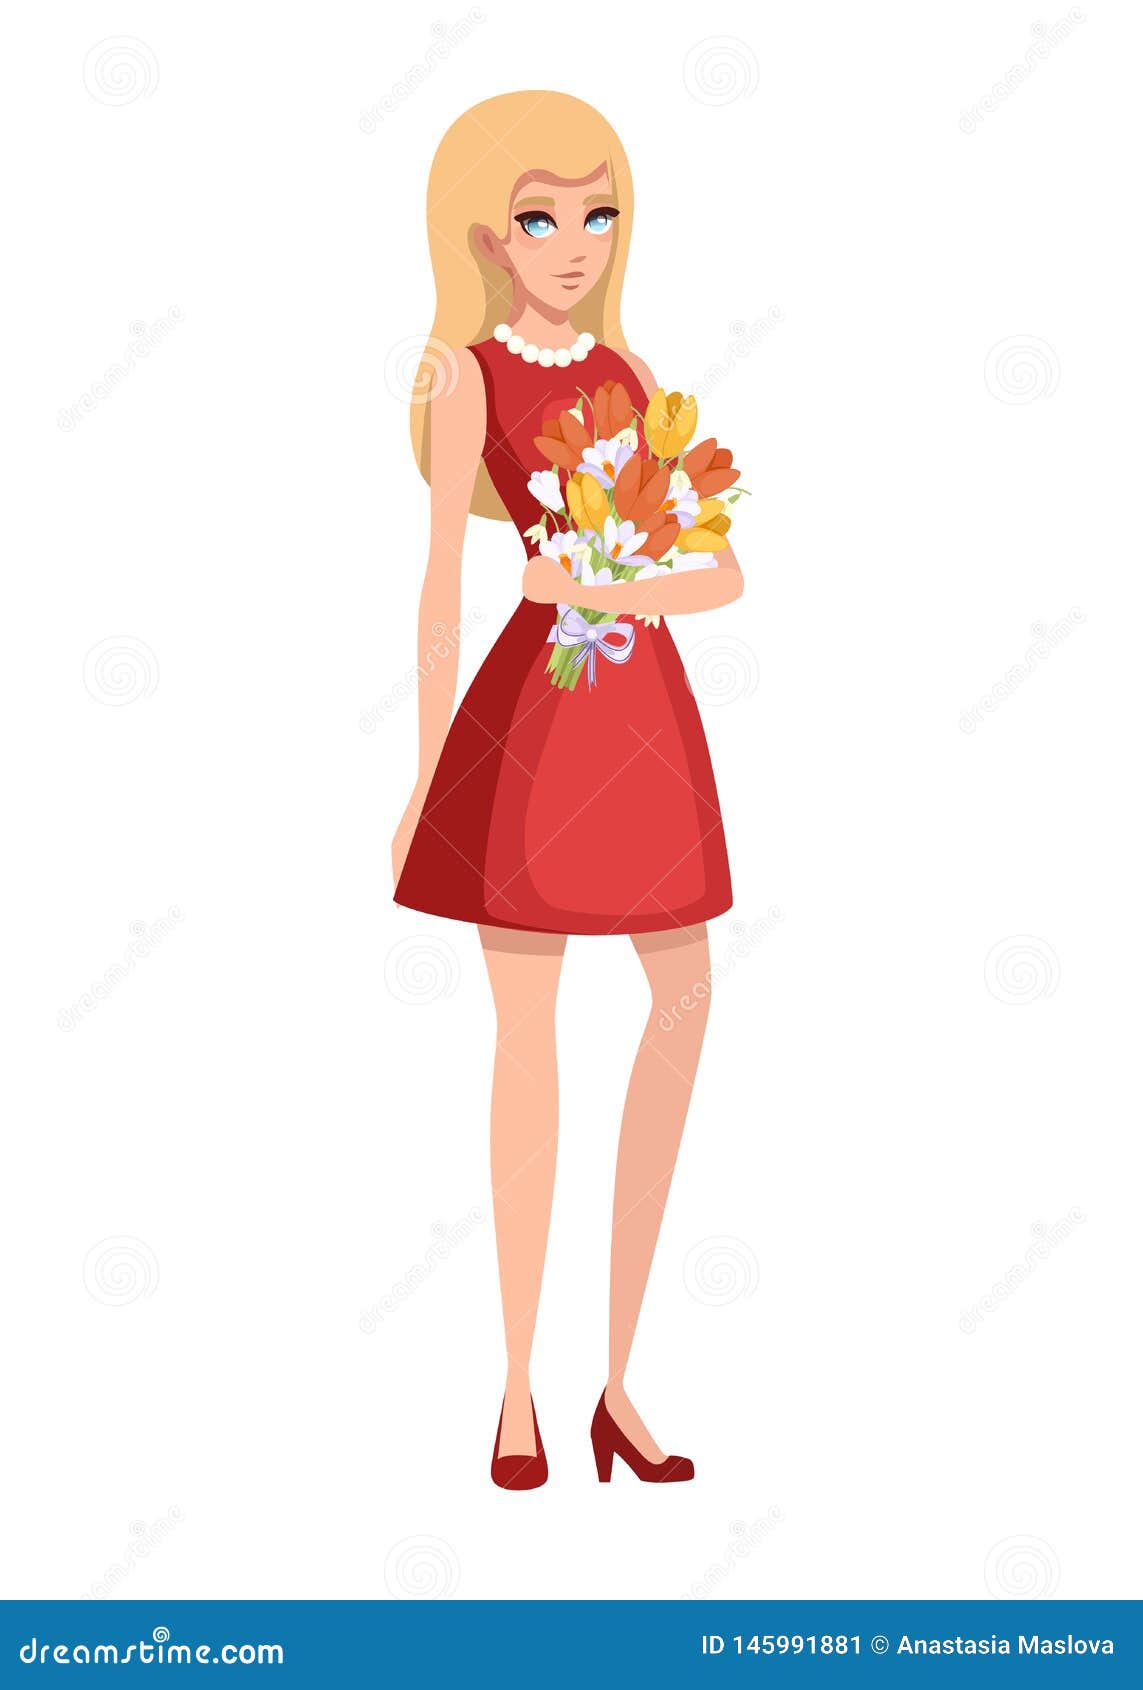 Vestido Rojo Hermoso Del Desgaste De Mujer Y Sostener Un Ramo De La Flor  Dise?o De Personaje De Dibujos Animados Ejemplo Plano De Stock de  ilustración - Ilustración de amor, regalo: 145991881